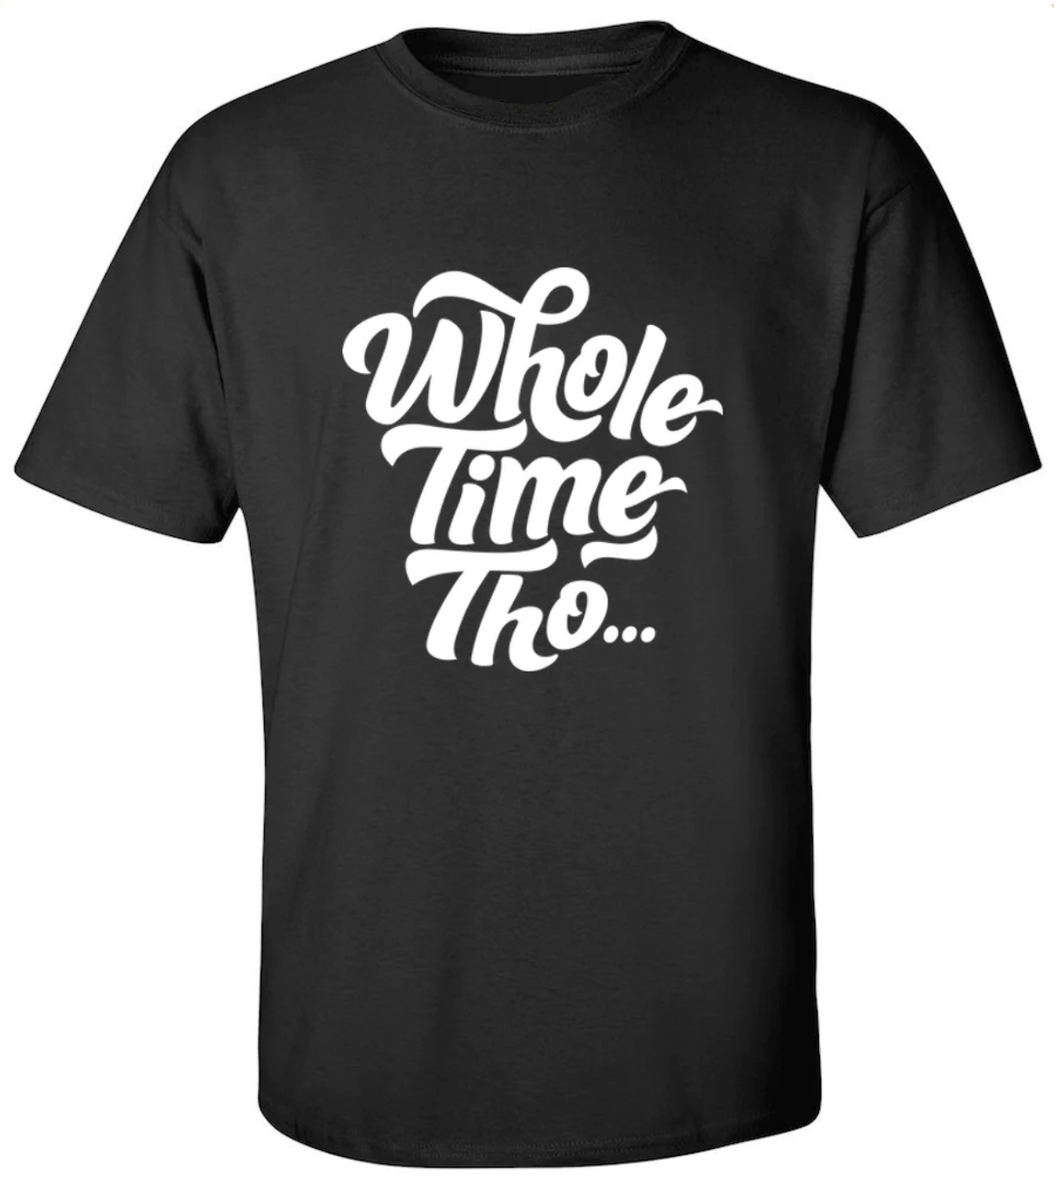 Whole Time Tho T-Shirt - Men's Medium Black